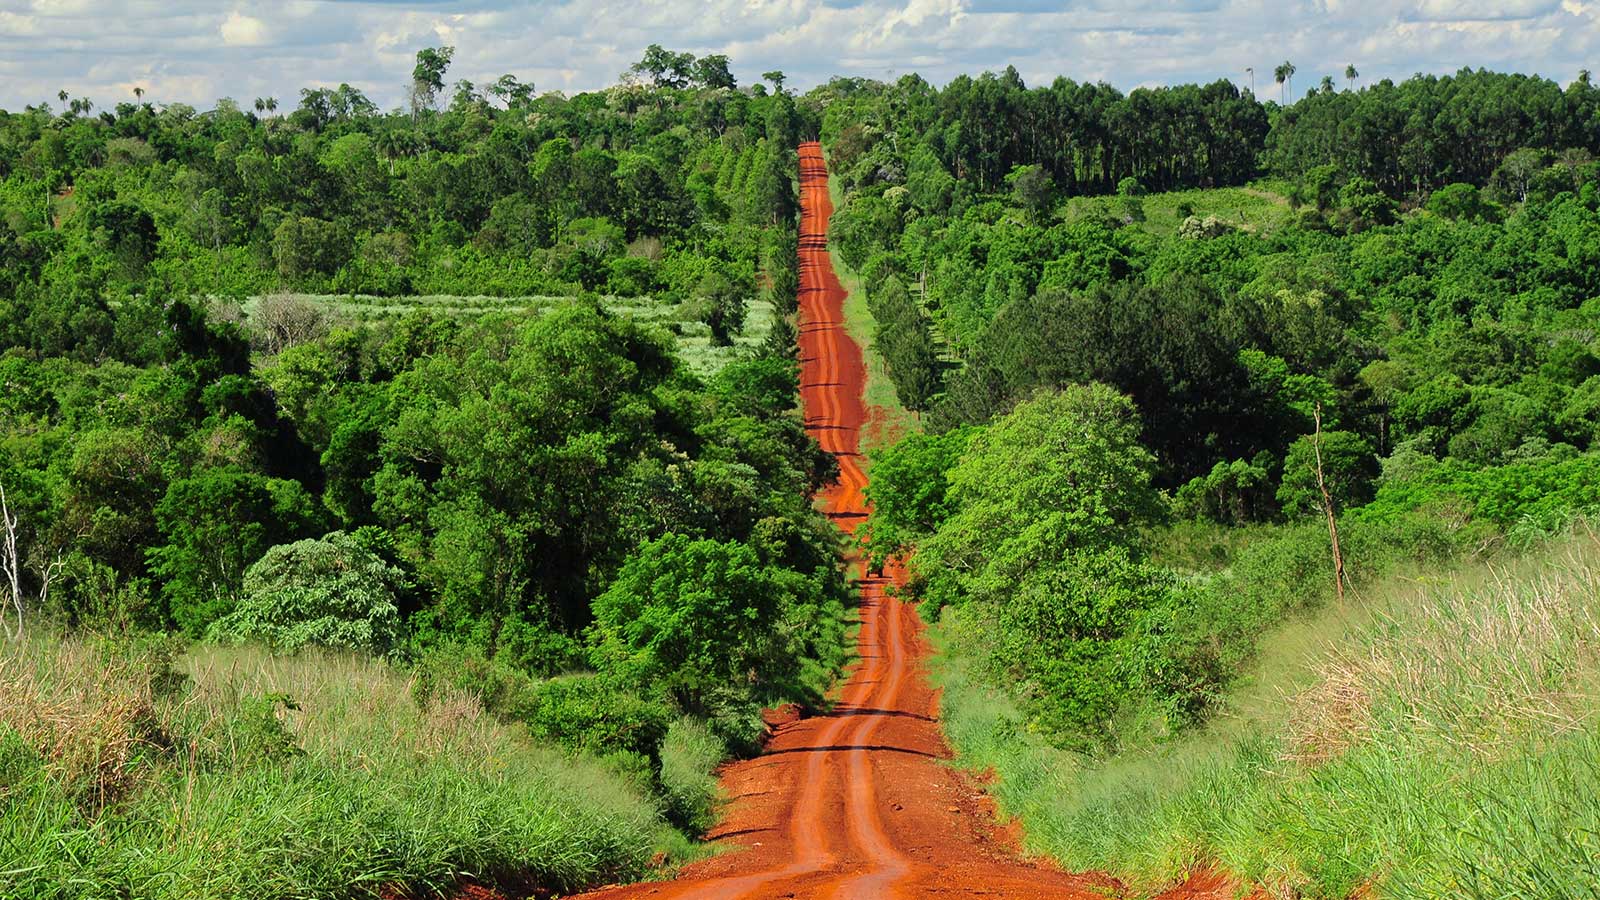 La selva misionera es una reserva de biodiversidad y cuenta con cerca de 1,5 millones de hectáreas que se buscan preservar.